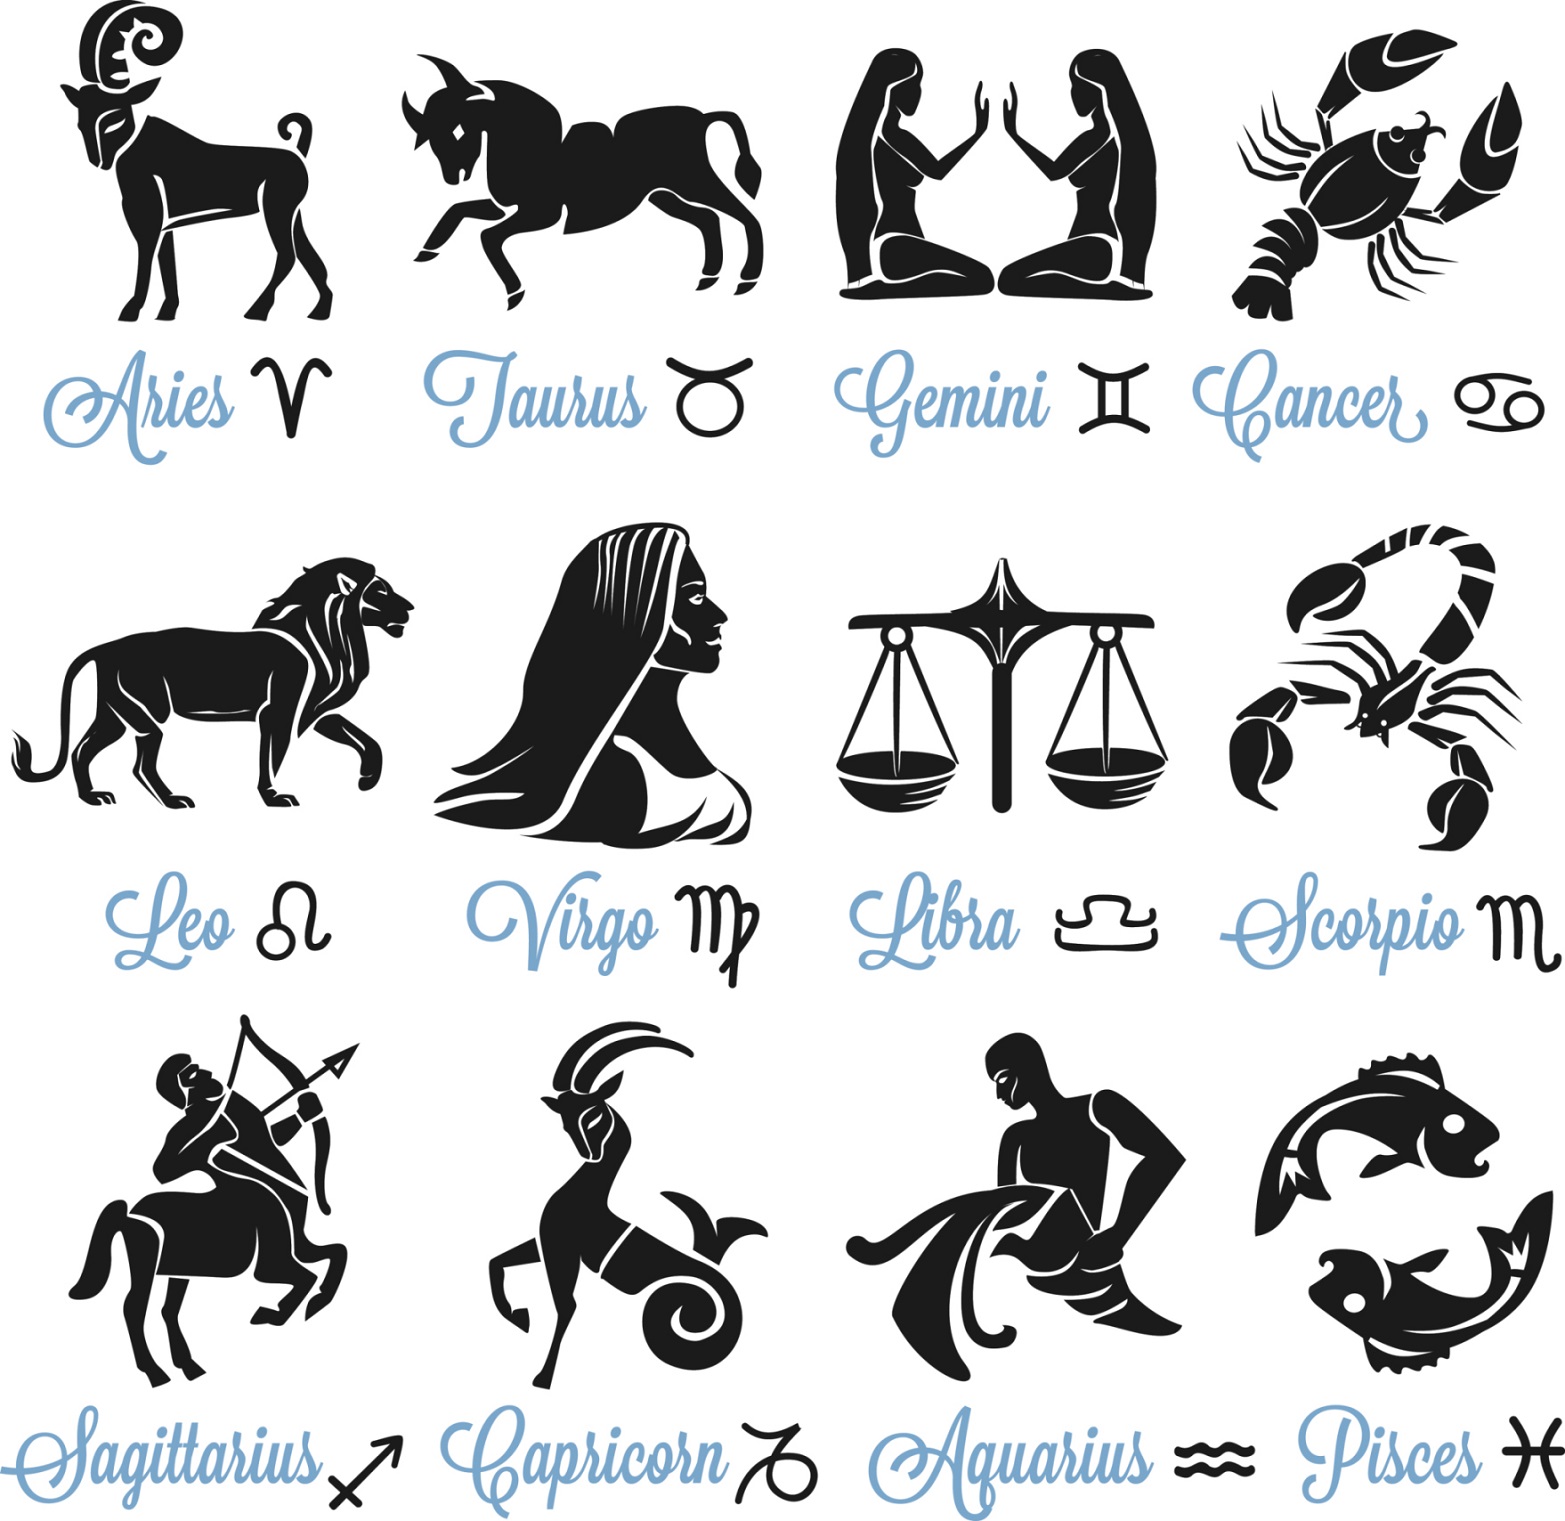 Segni zodiacali, la classifica dal più buono al più cattivo